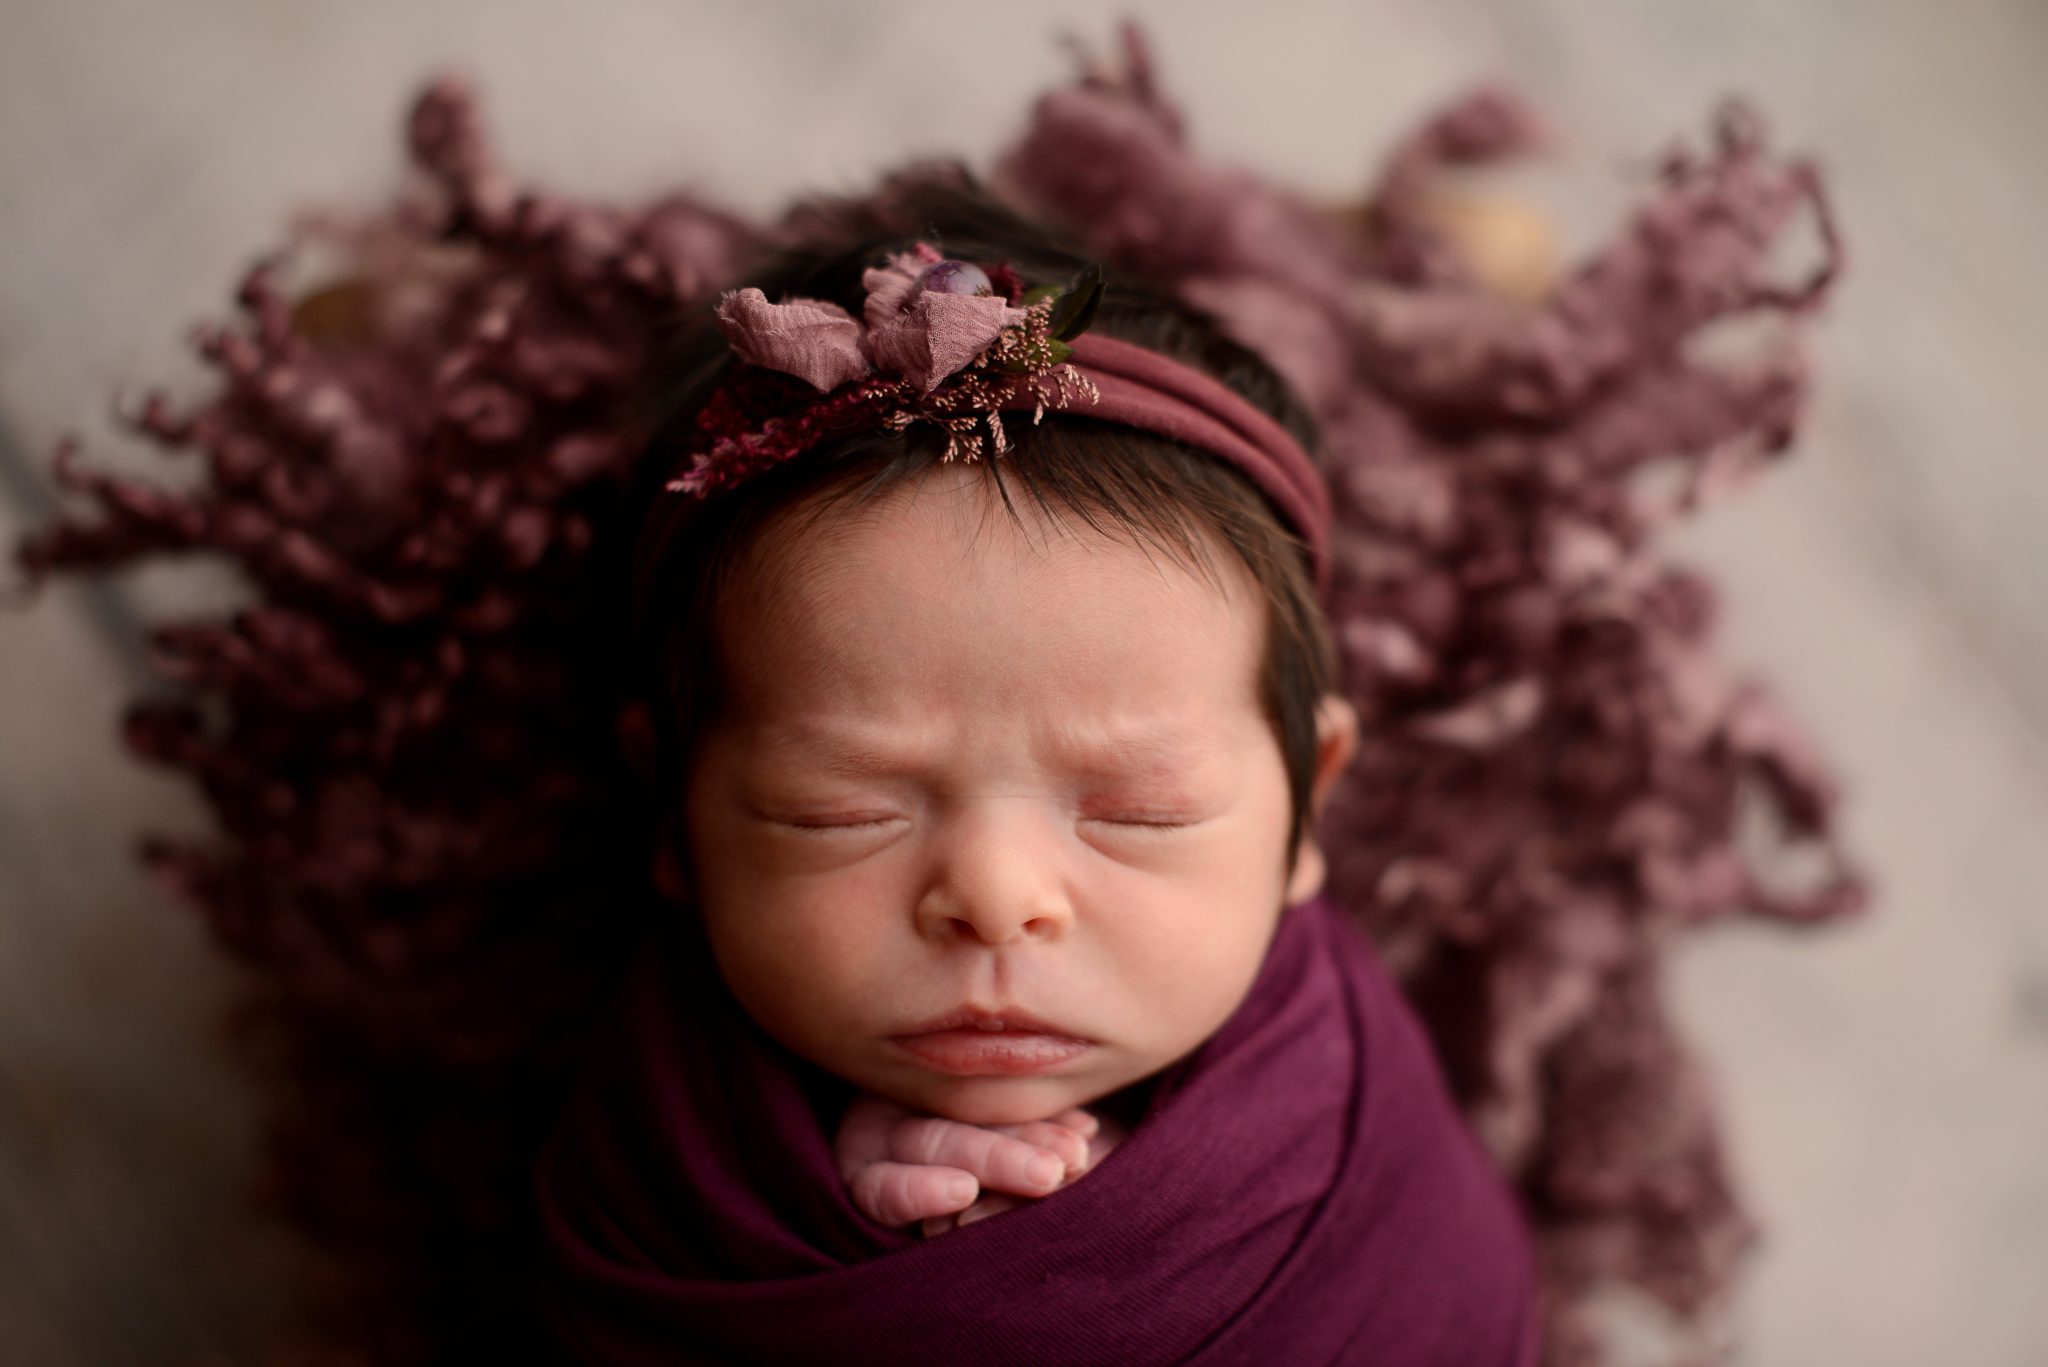 Queens newborn studio portrait of baby girl in plum wrap